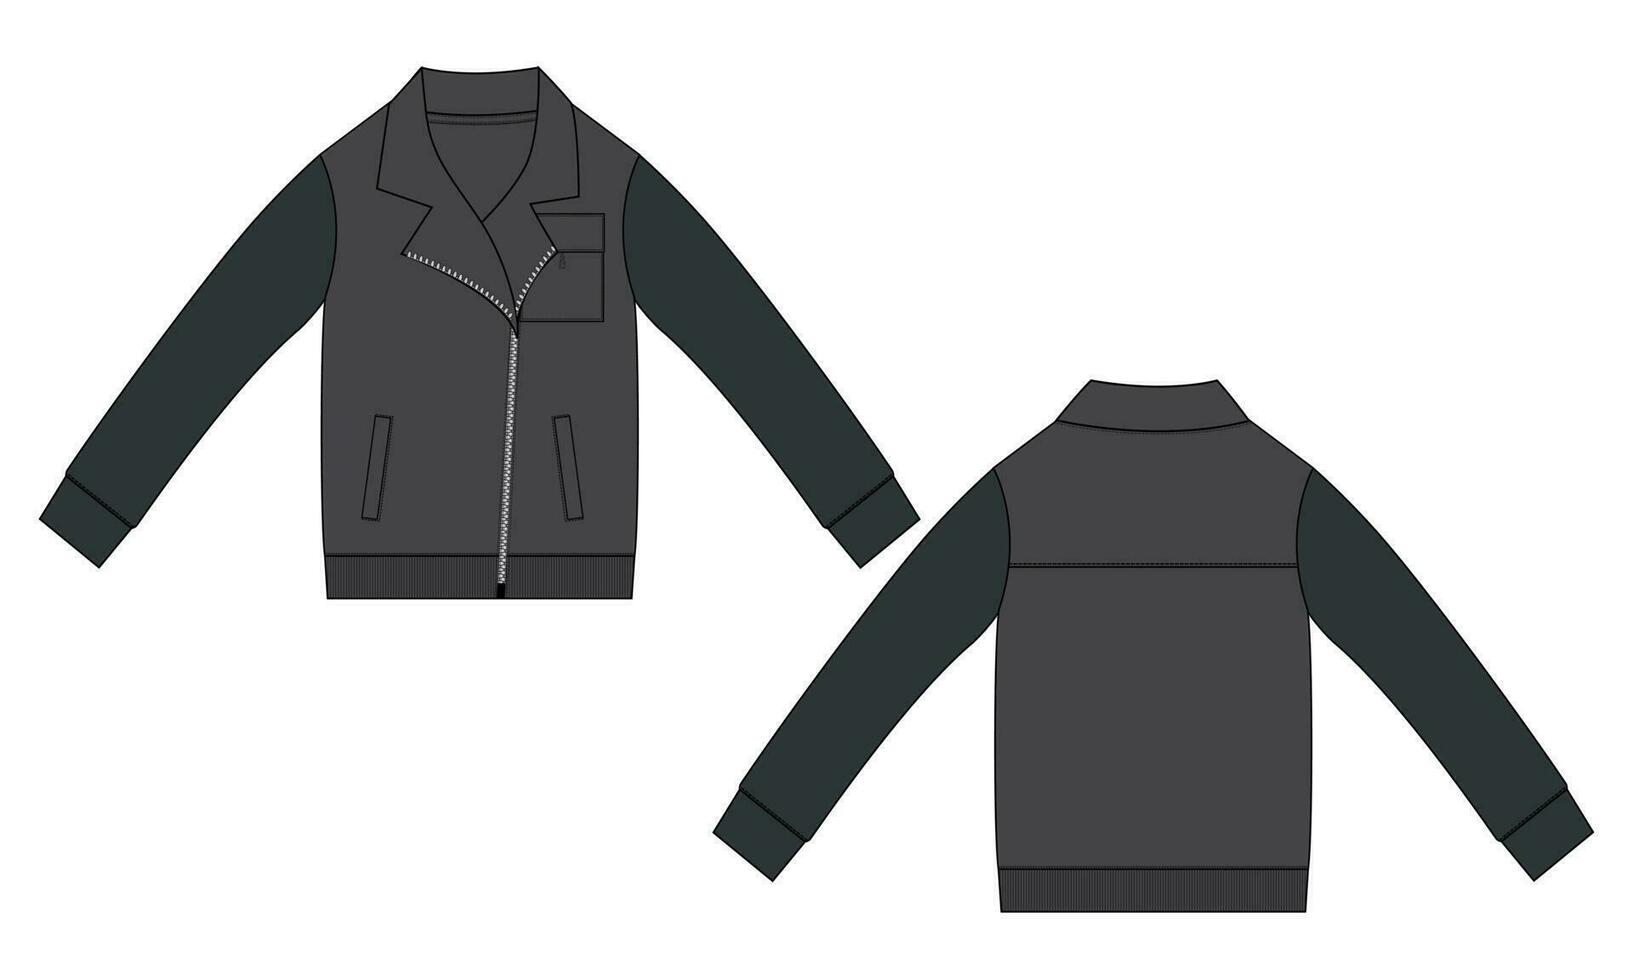 lana tela abrigos chaqueta camisa de entrenamiento técnico Moda plano bosquejo vector ilustración modelo frente y espalda vista. vestir chaqueta plano dibujo vector burlarse de arriba